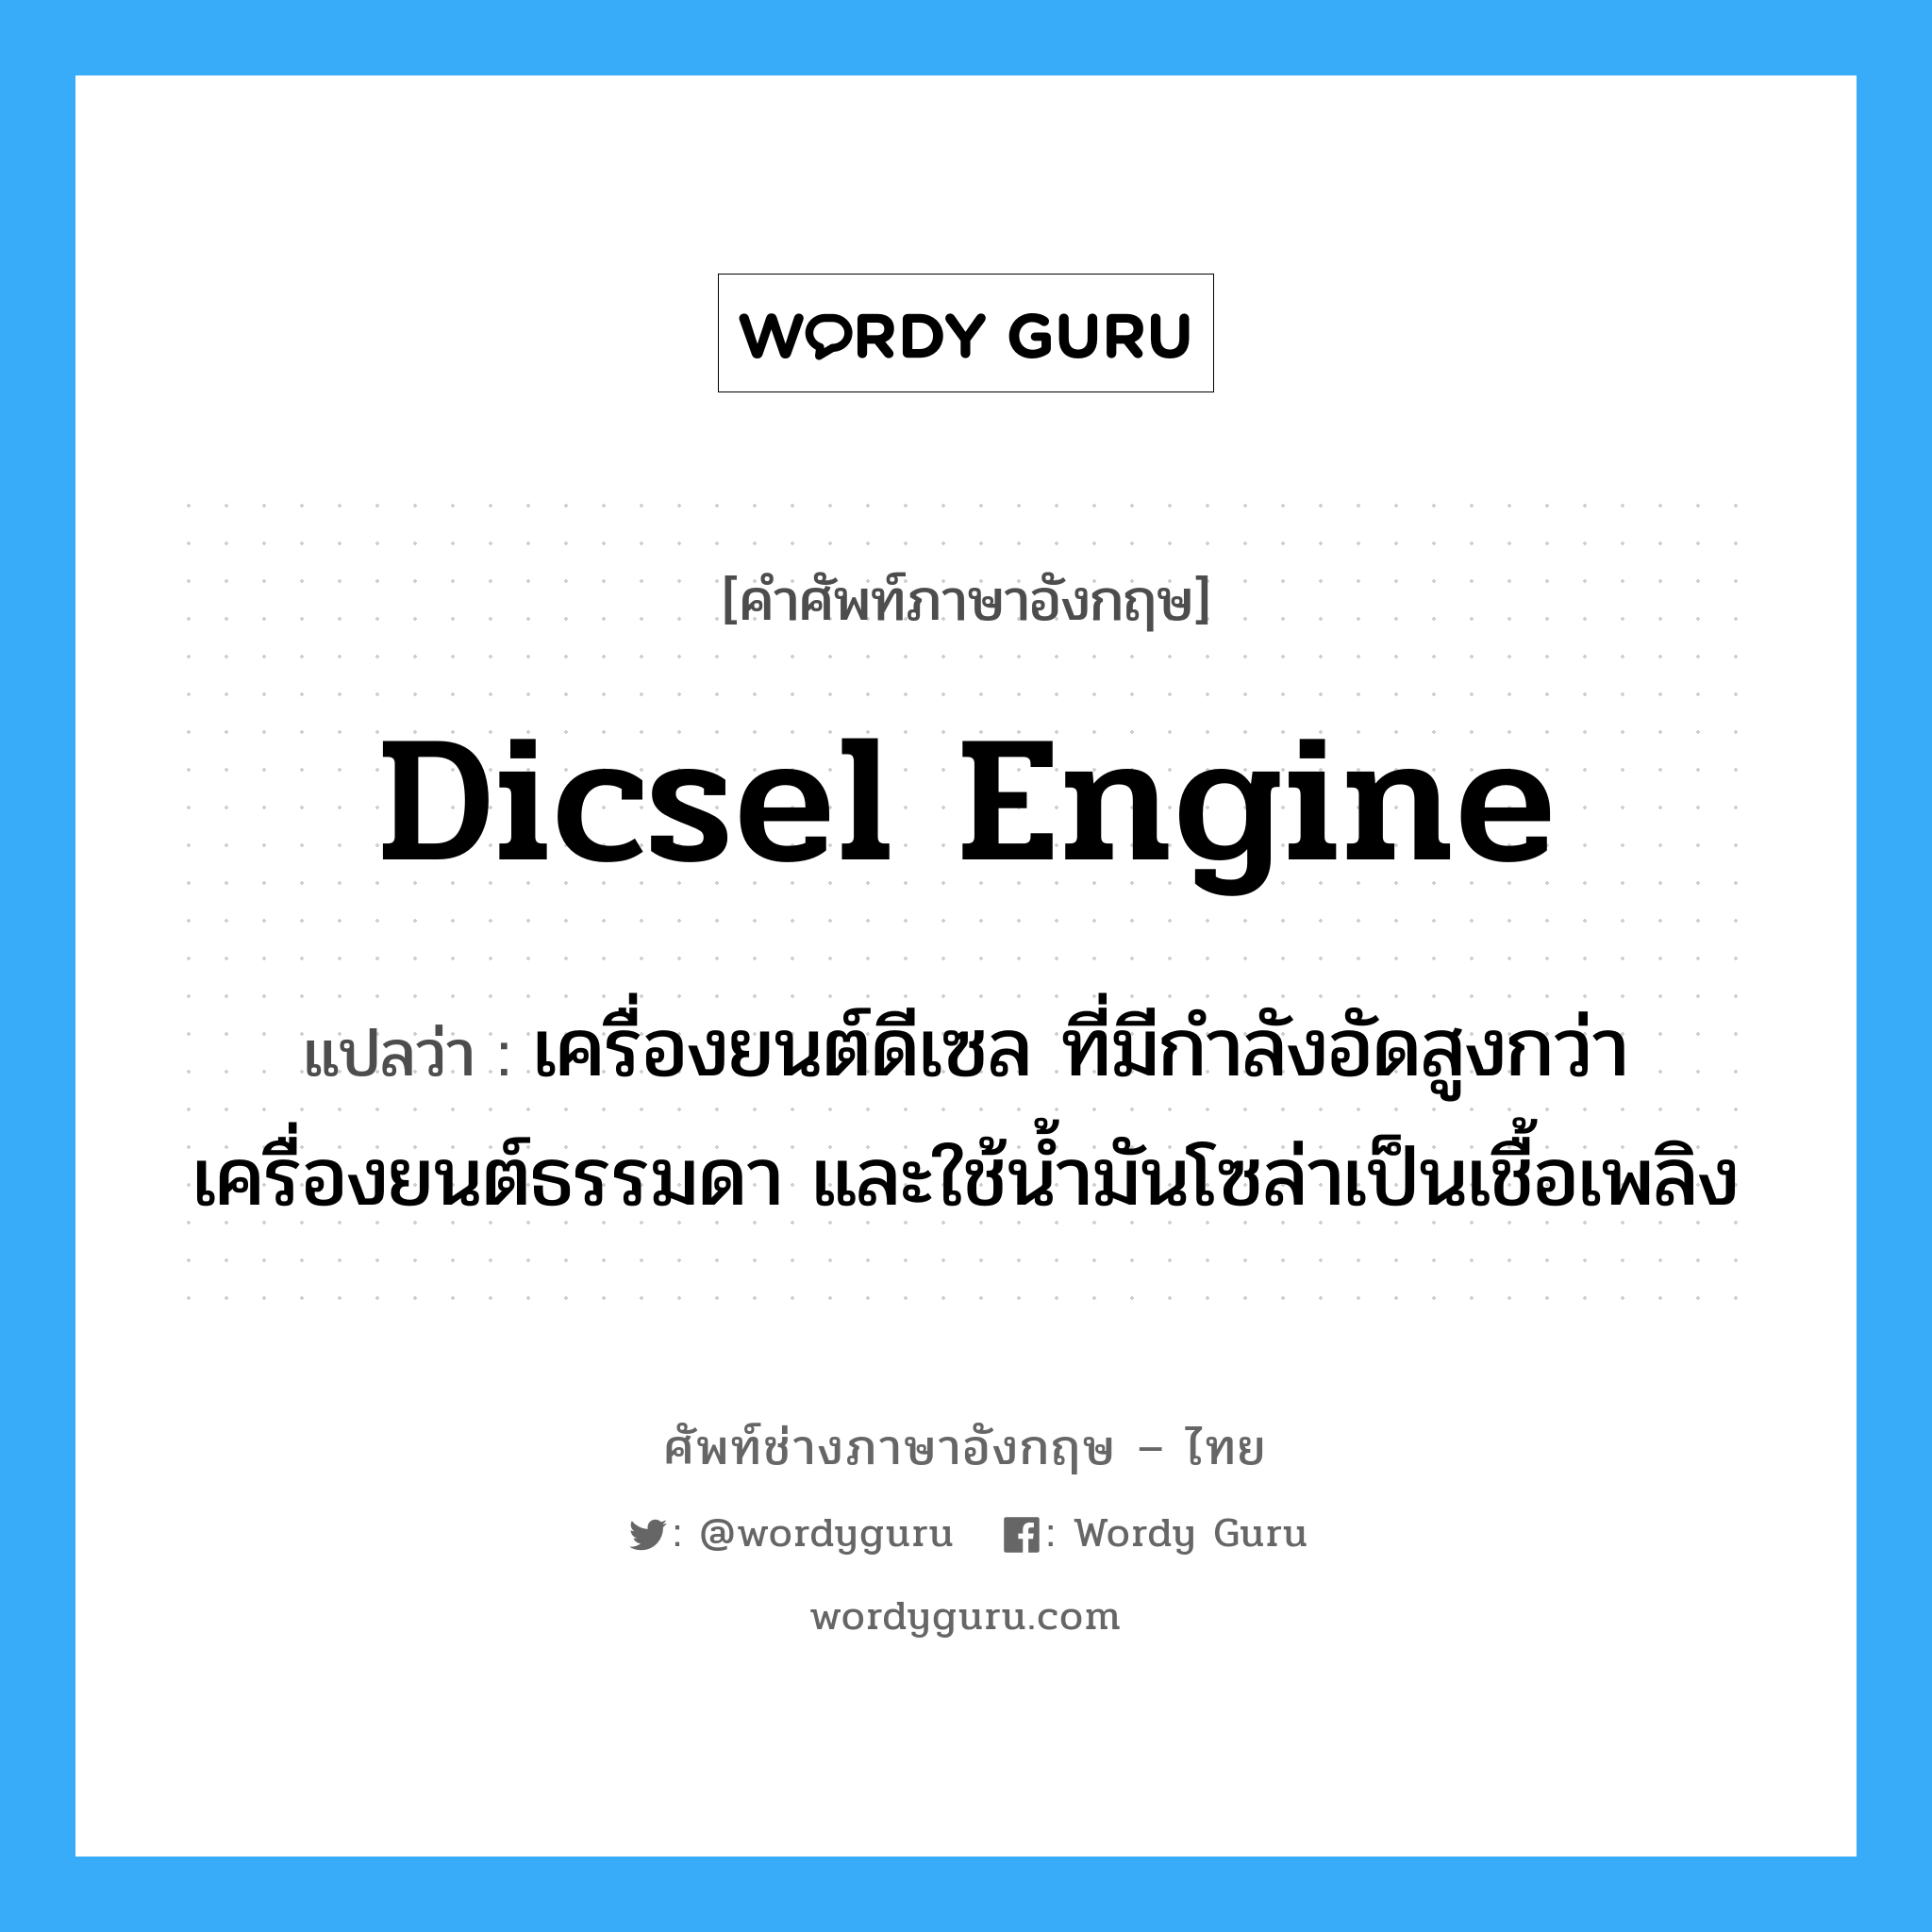 Dicsel engine แปลว่า?, คำศัพท์ช่างภาษาอังกฤษ - ไทย Dicsel engine คำศัพท์ภาษาอังกฤษ Dicsel engine แปลว่า เครื่องยนต์ดีเซล ที่มีกำลังอัดสูงกว่าเครื่องยนต์ธรรมดา และใช้น้ำมันโซล่าเป็นเชื้อเพลิง